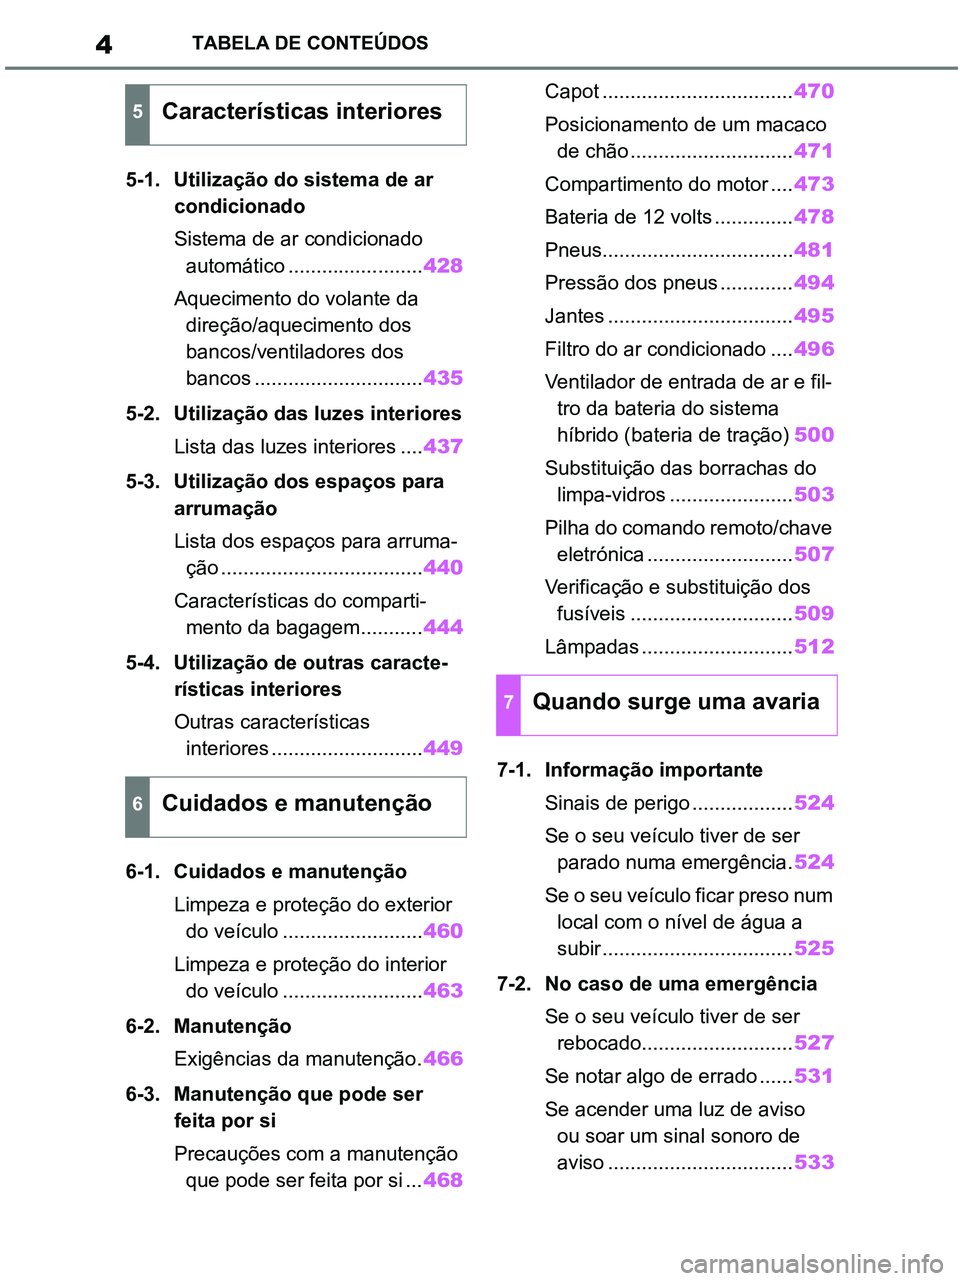 TOYOTA RAV4 2021  Manual de utilização (in Portuguese) 4TABELA DE CONTEÚDOS
5-1. Utilização do sistema de ar 
condicionado
Sistema de ar condicionado 
automático ........................428
Aquecimento do volante da 
direção/aquecimento dos 
bancos/